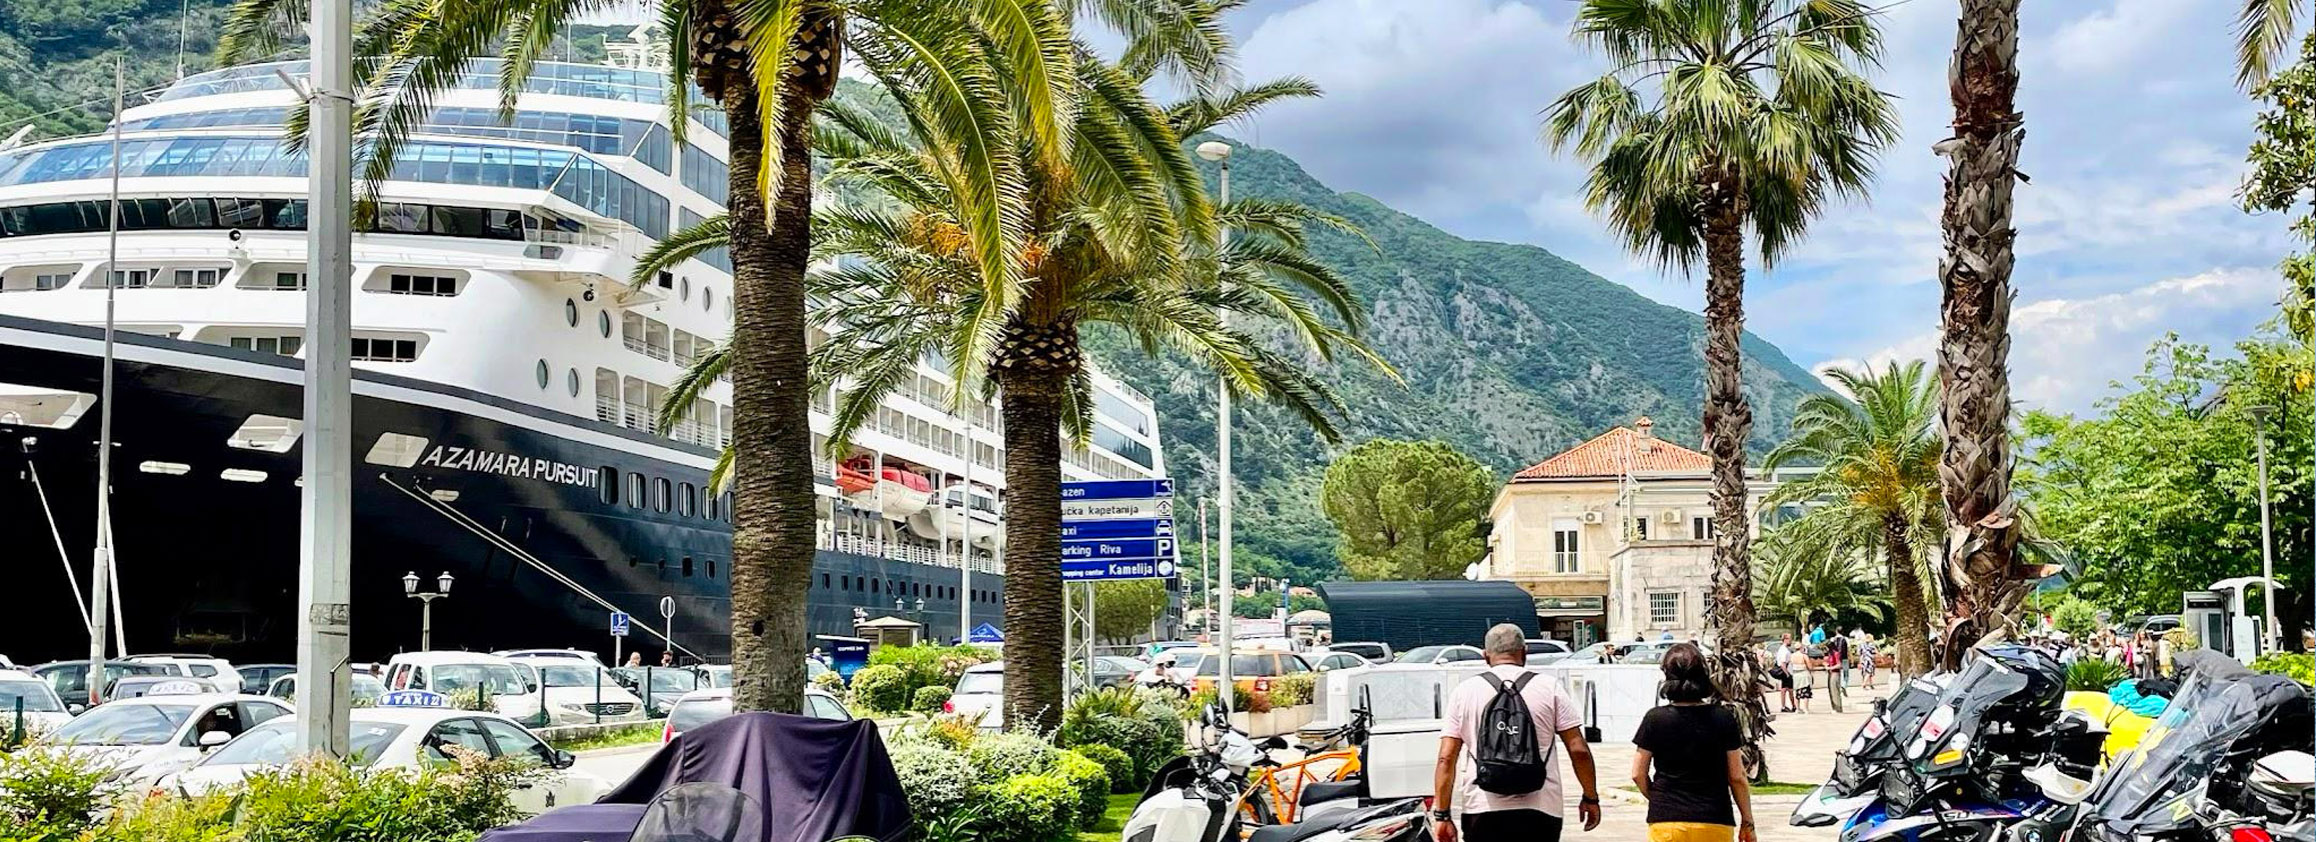 Die Hafenpromenade in Kotor, die eine Station der Rhein2Ganges-Charity-Tour war